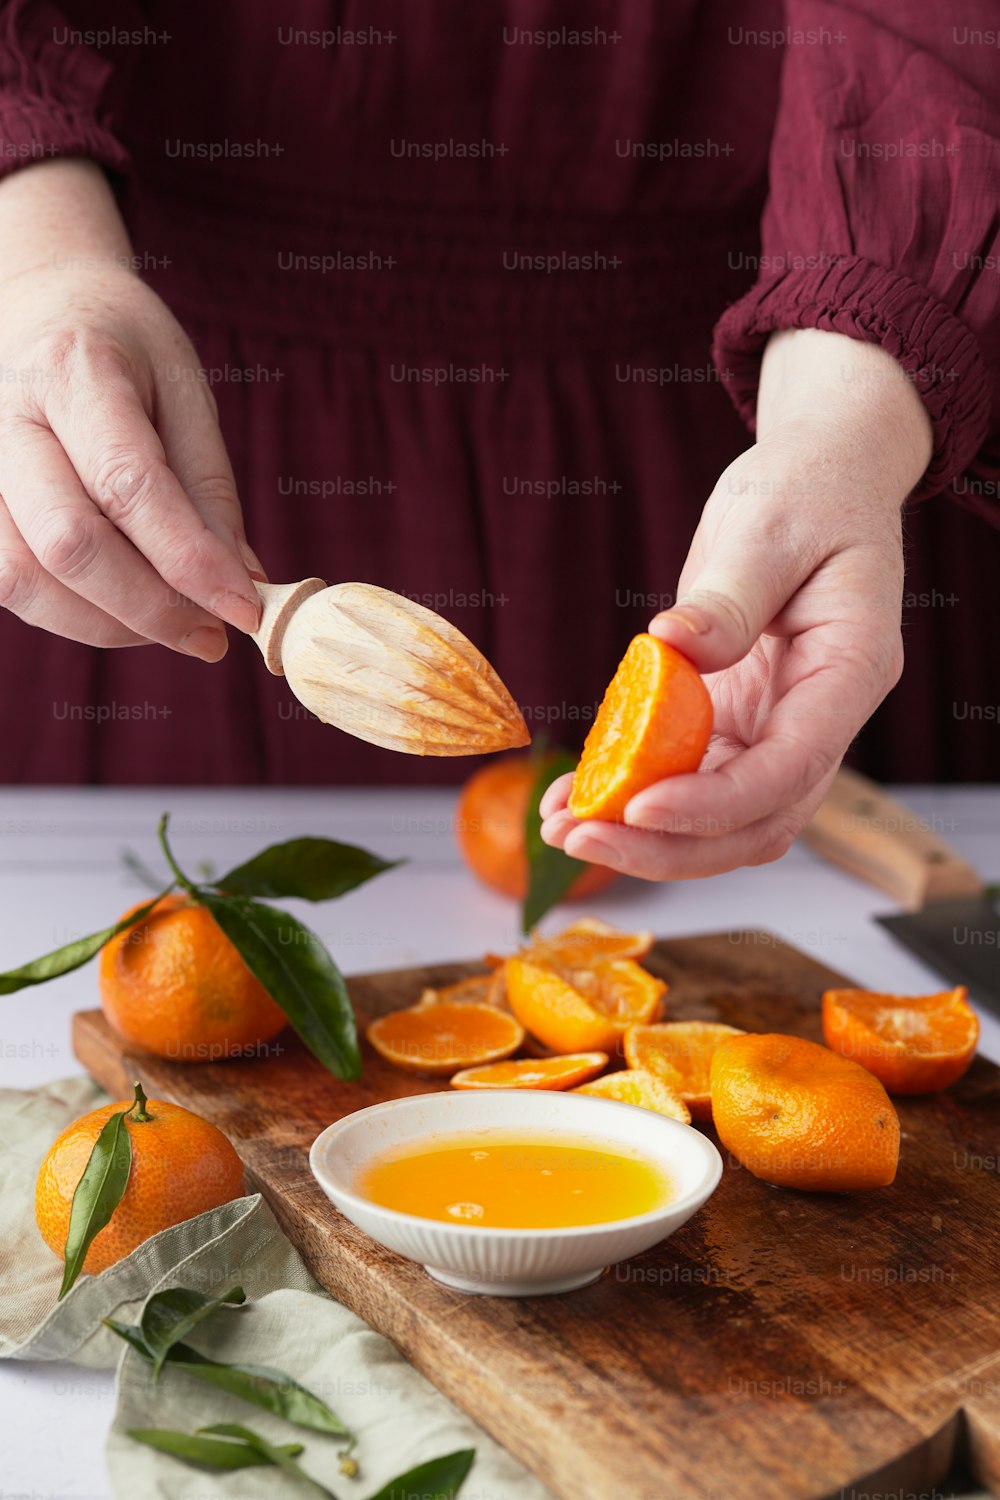 una persona está cortando una naranja